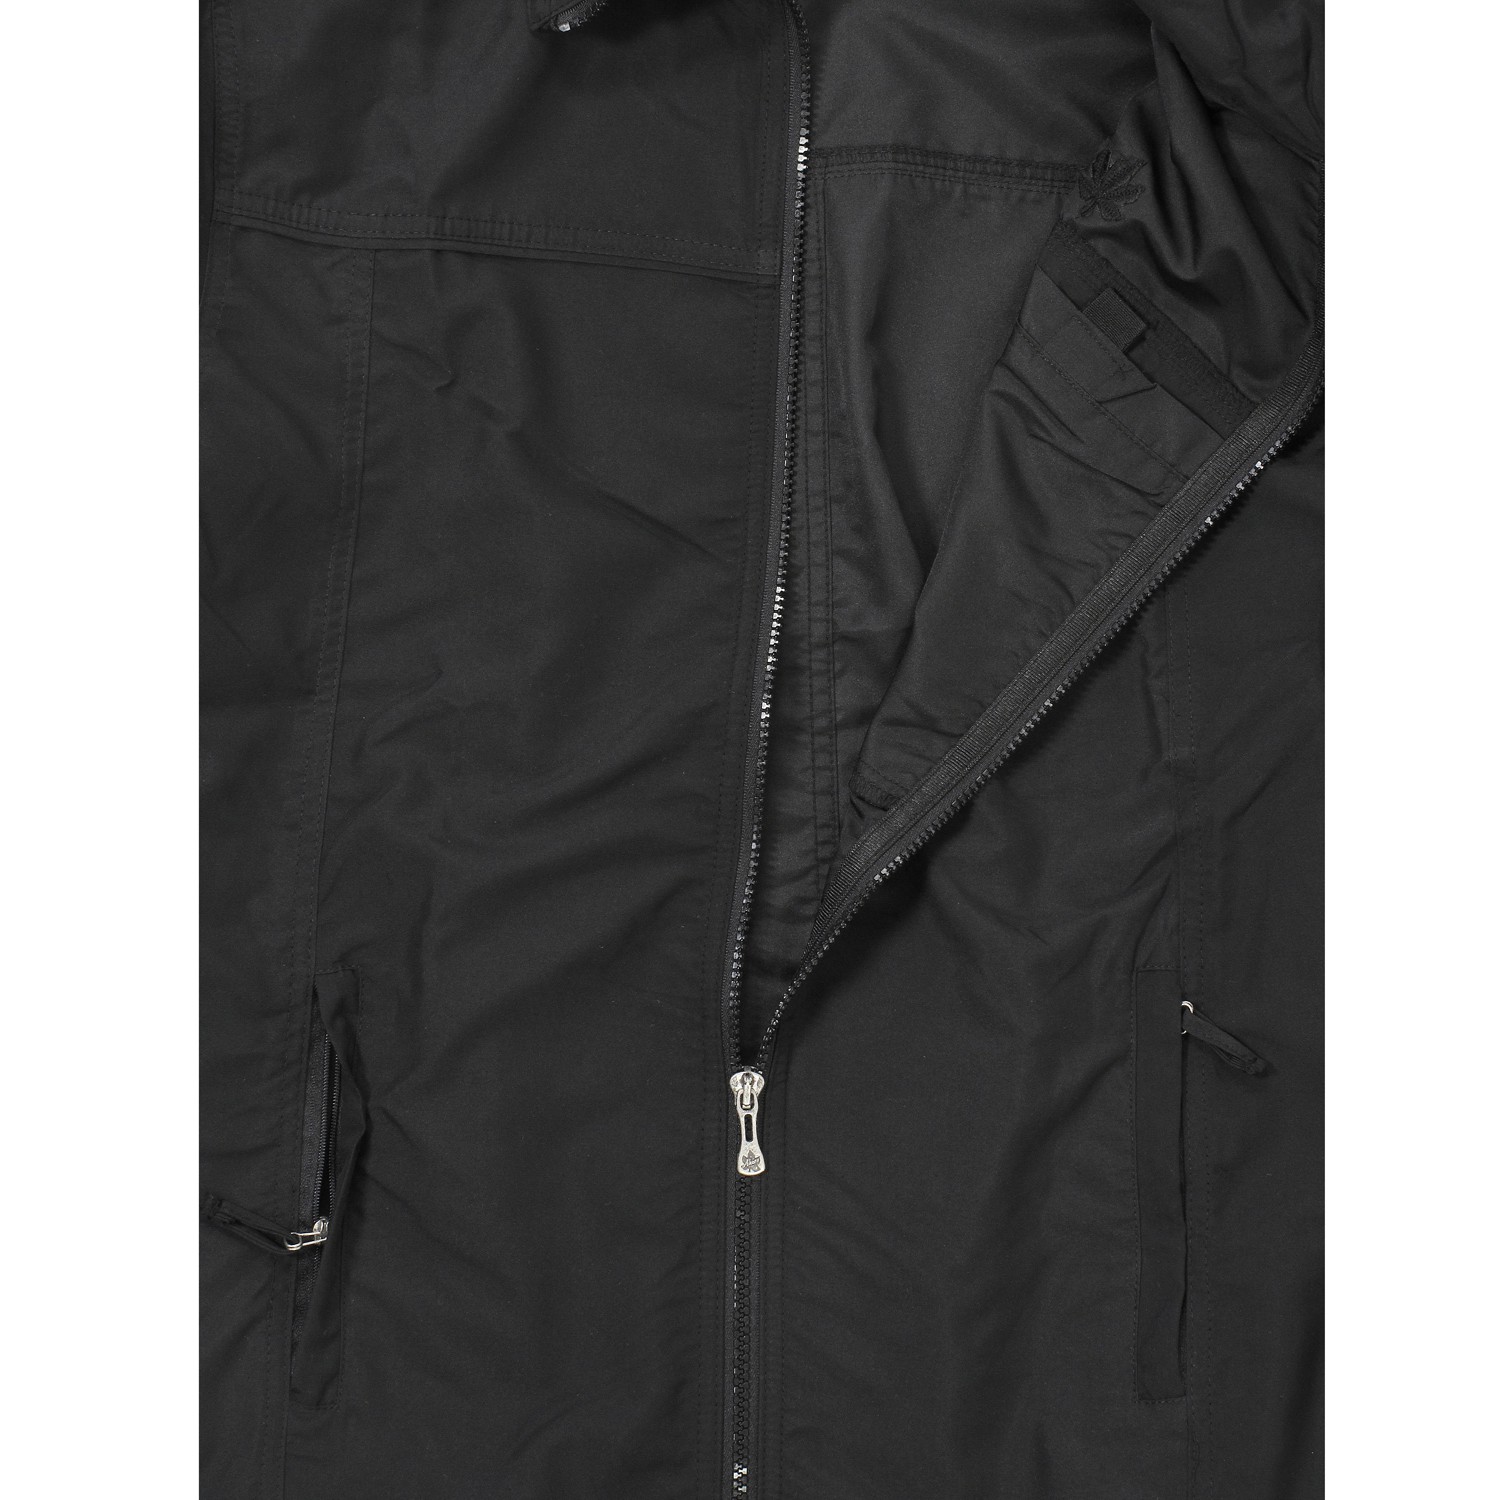 Herren Micro Fitness Jacke von Ahorn Sportswear in schwarz bis Übergröße 10XL